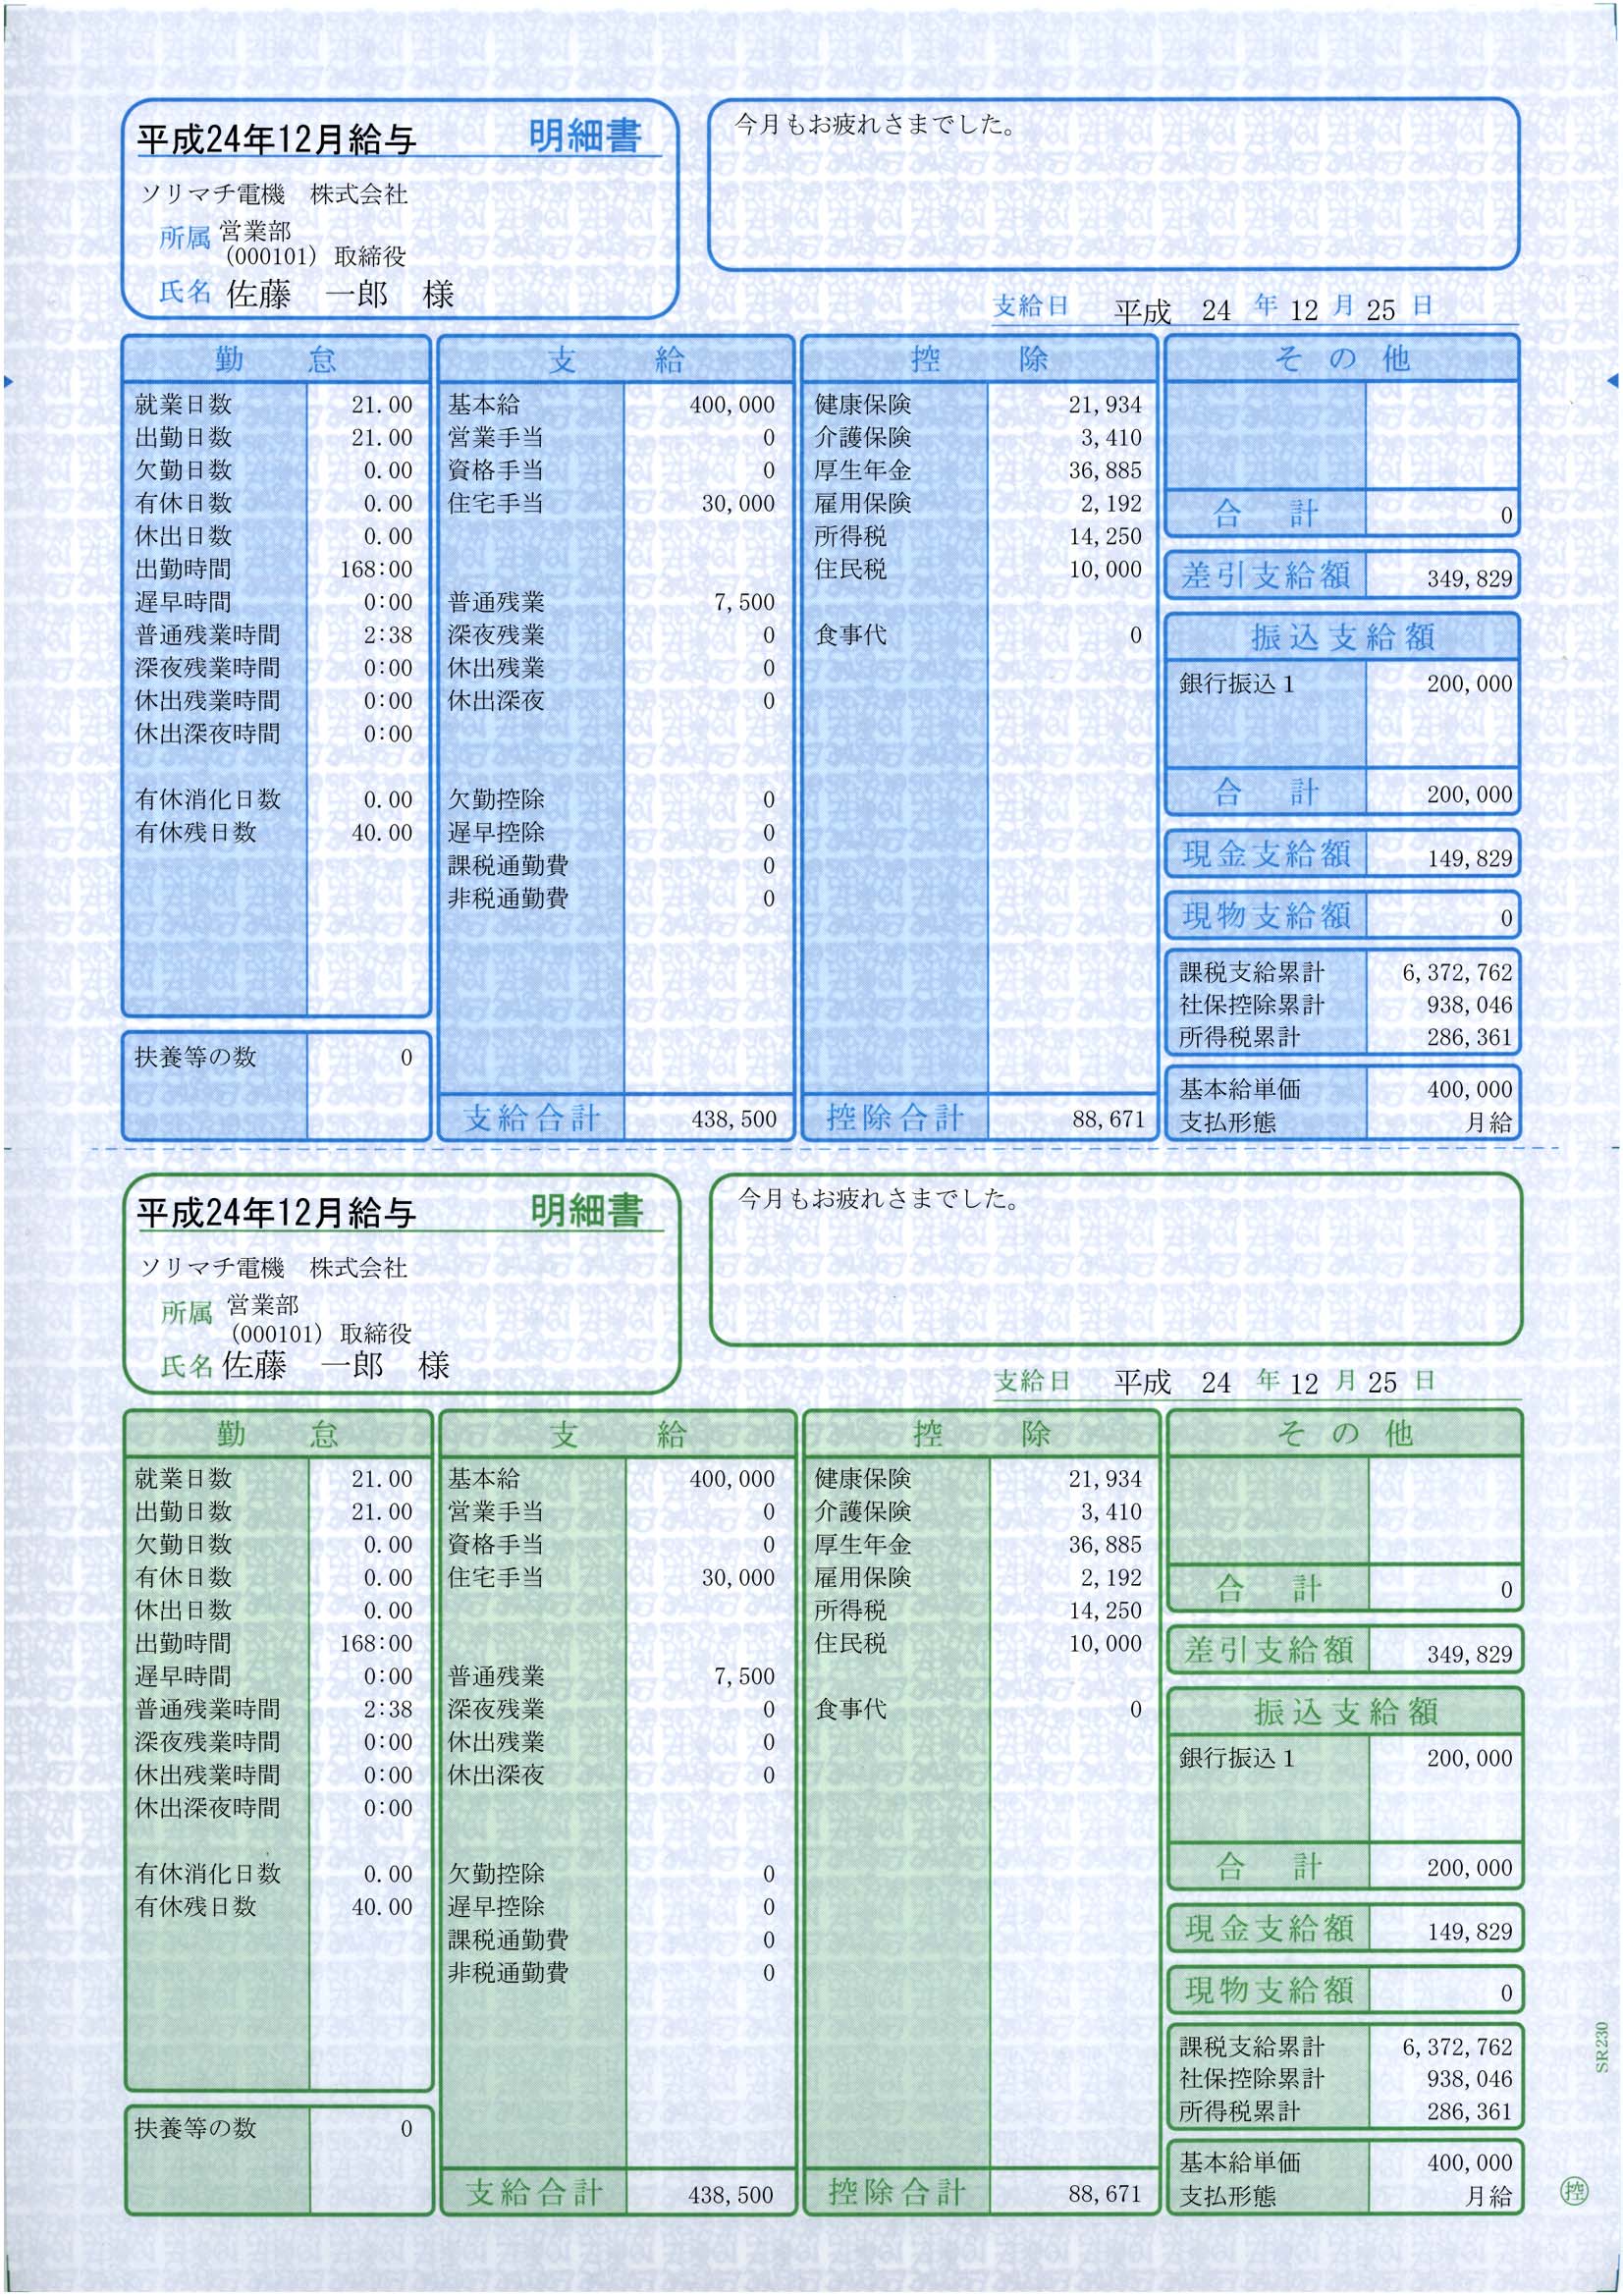 専用帳票「SR2111 給与・賞与明細書（封筒型）」